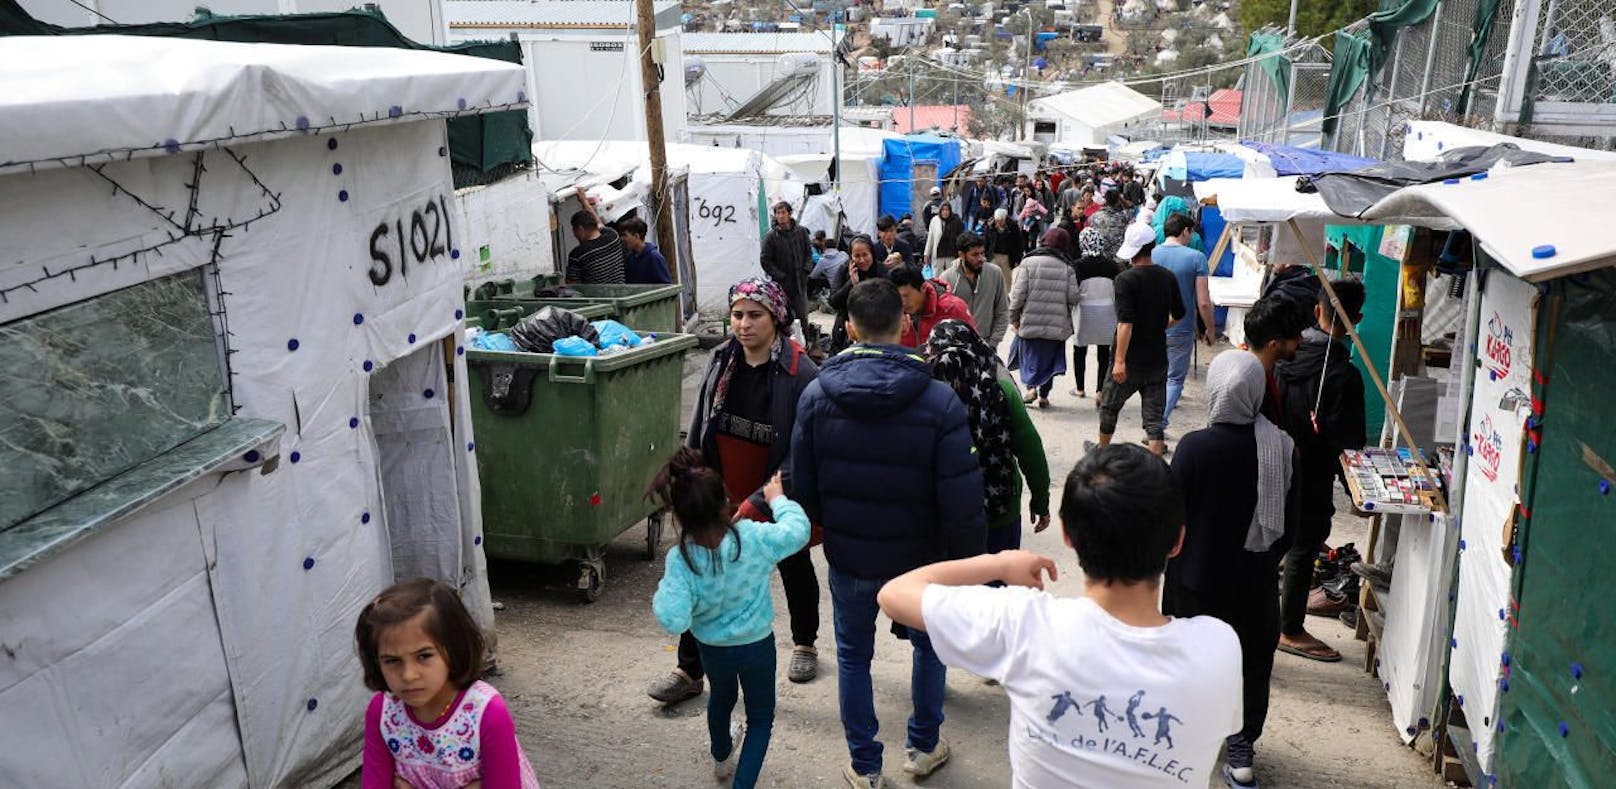 Drei Länder haben in Flüchtlingskrise EU-Recht gebrochen